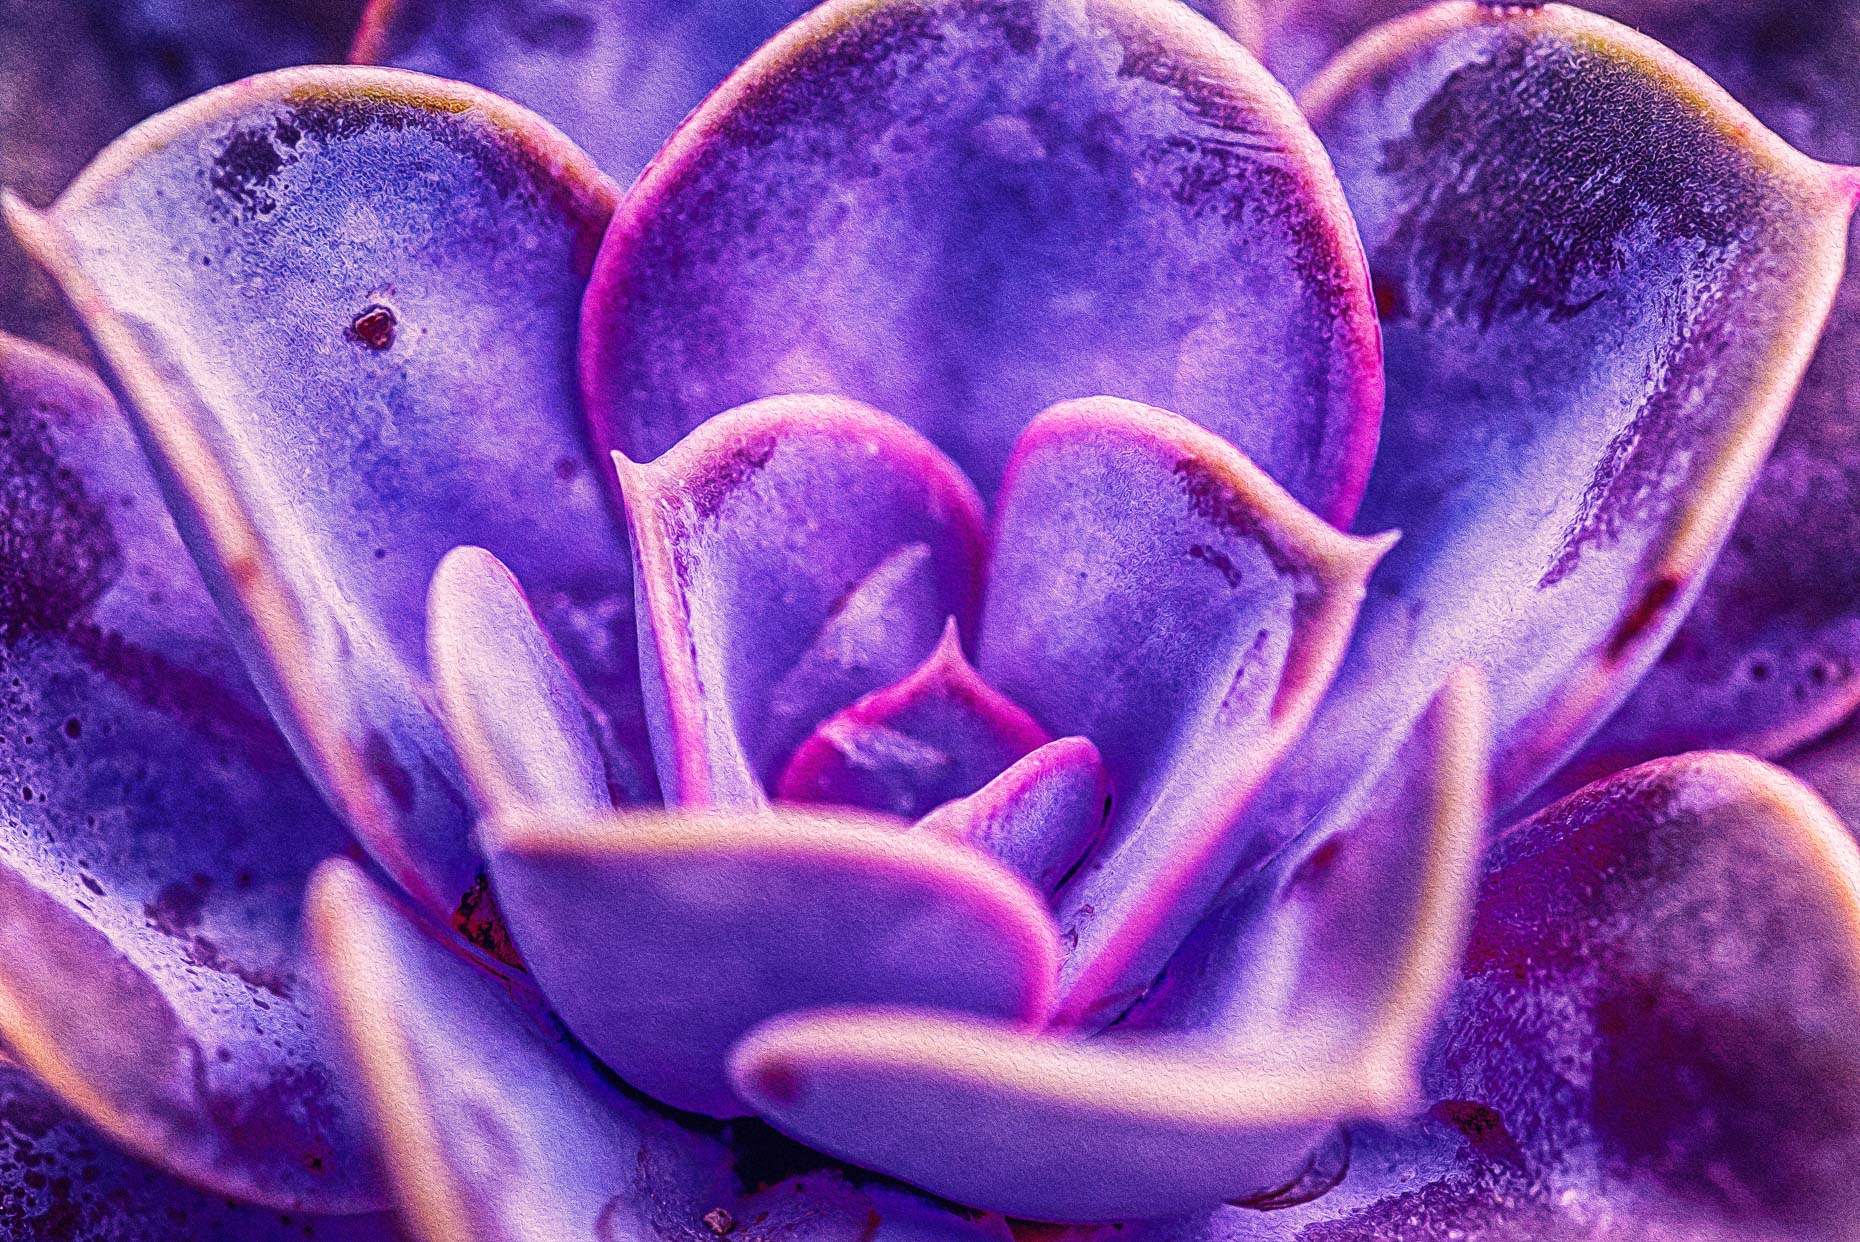 Psychedelic Cactus Petals #2